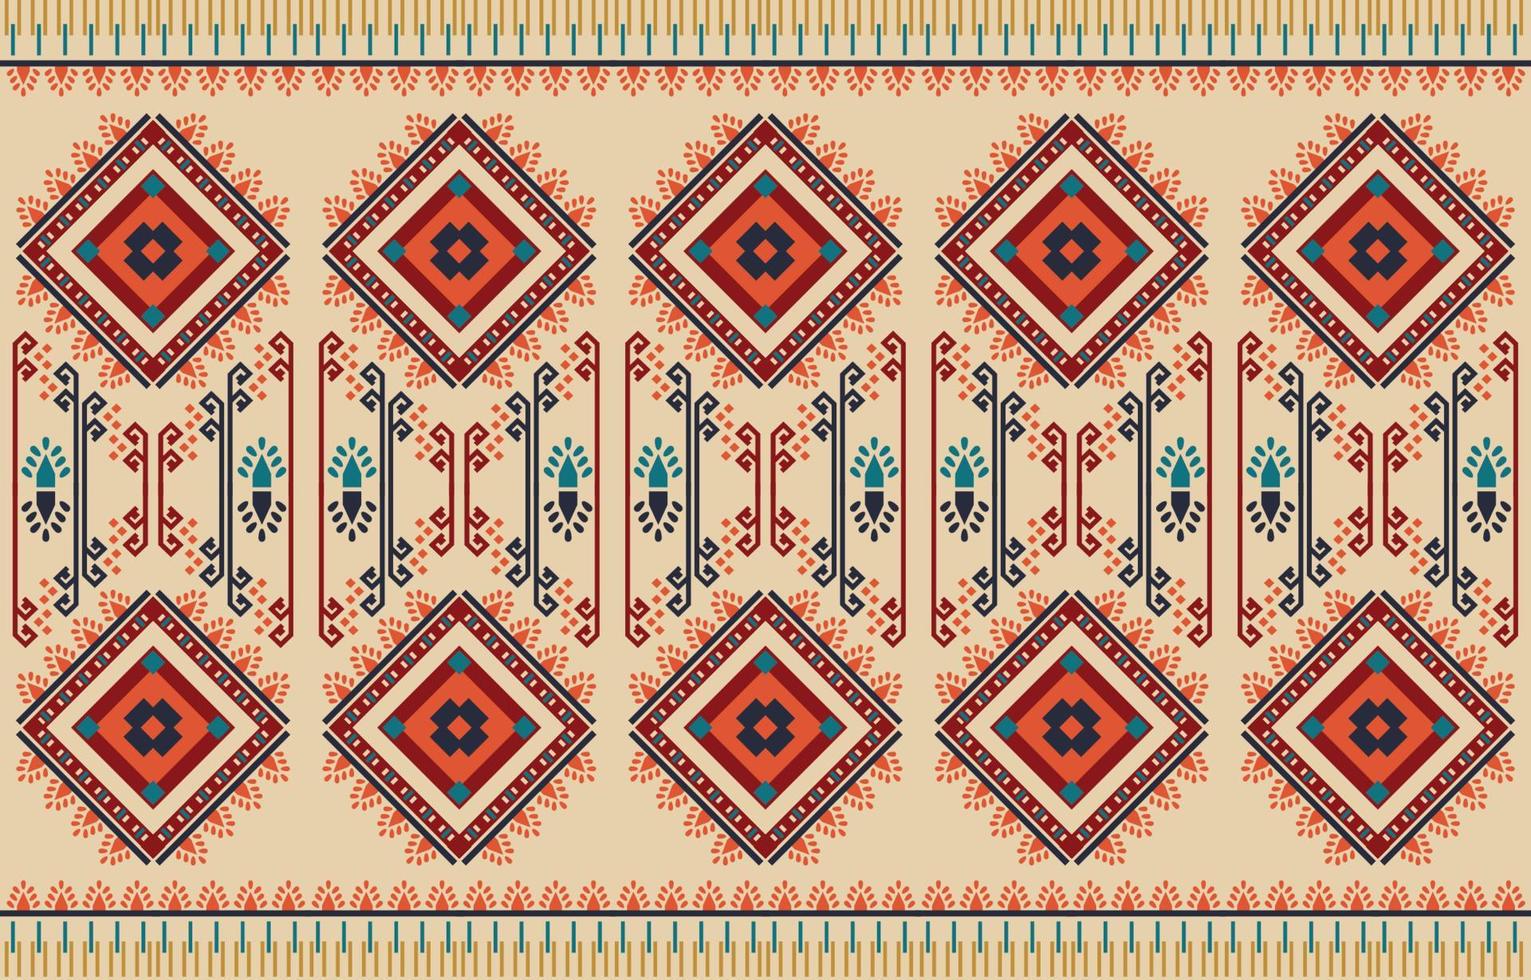 arte de patrón cuadrado abstracto étnico. patrón impecable en bordado tribal, folclórico, estilo de tela tribal. estampado de adornos de arte geométrico azteca.diseño para alfombras, prendas de vestir, envolturas, telas, cubiertas, textiles vector